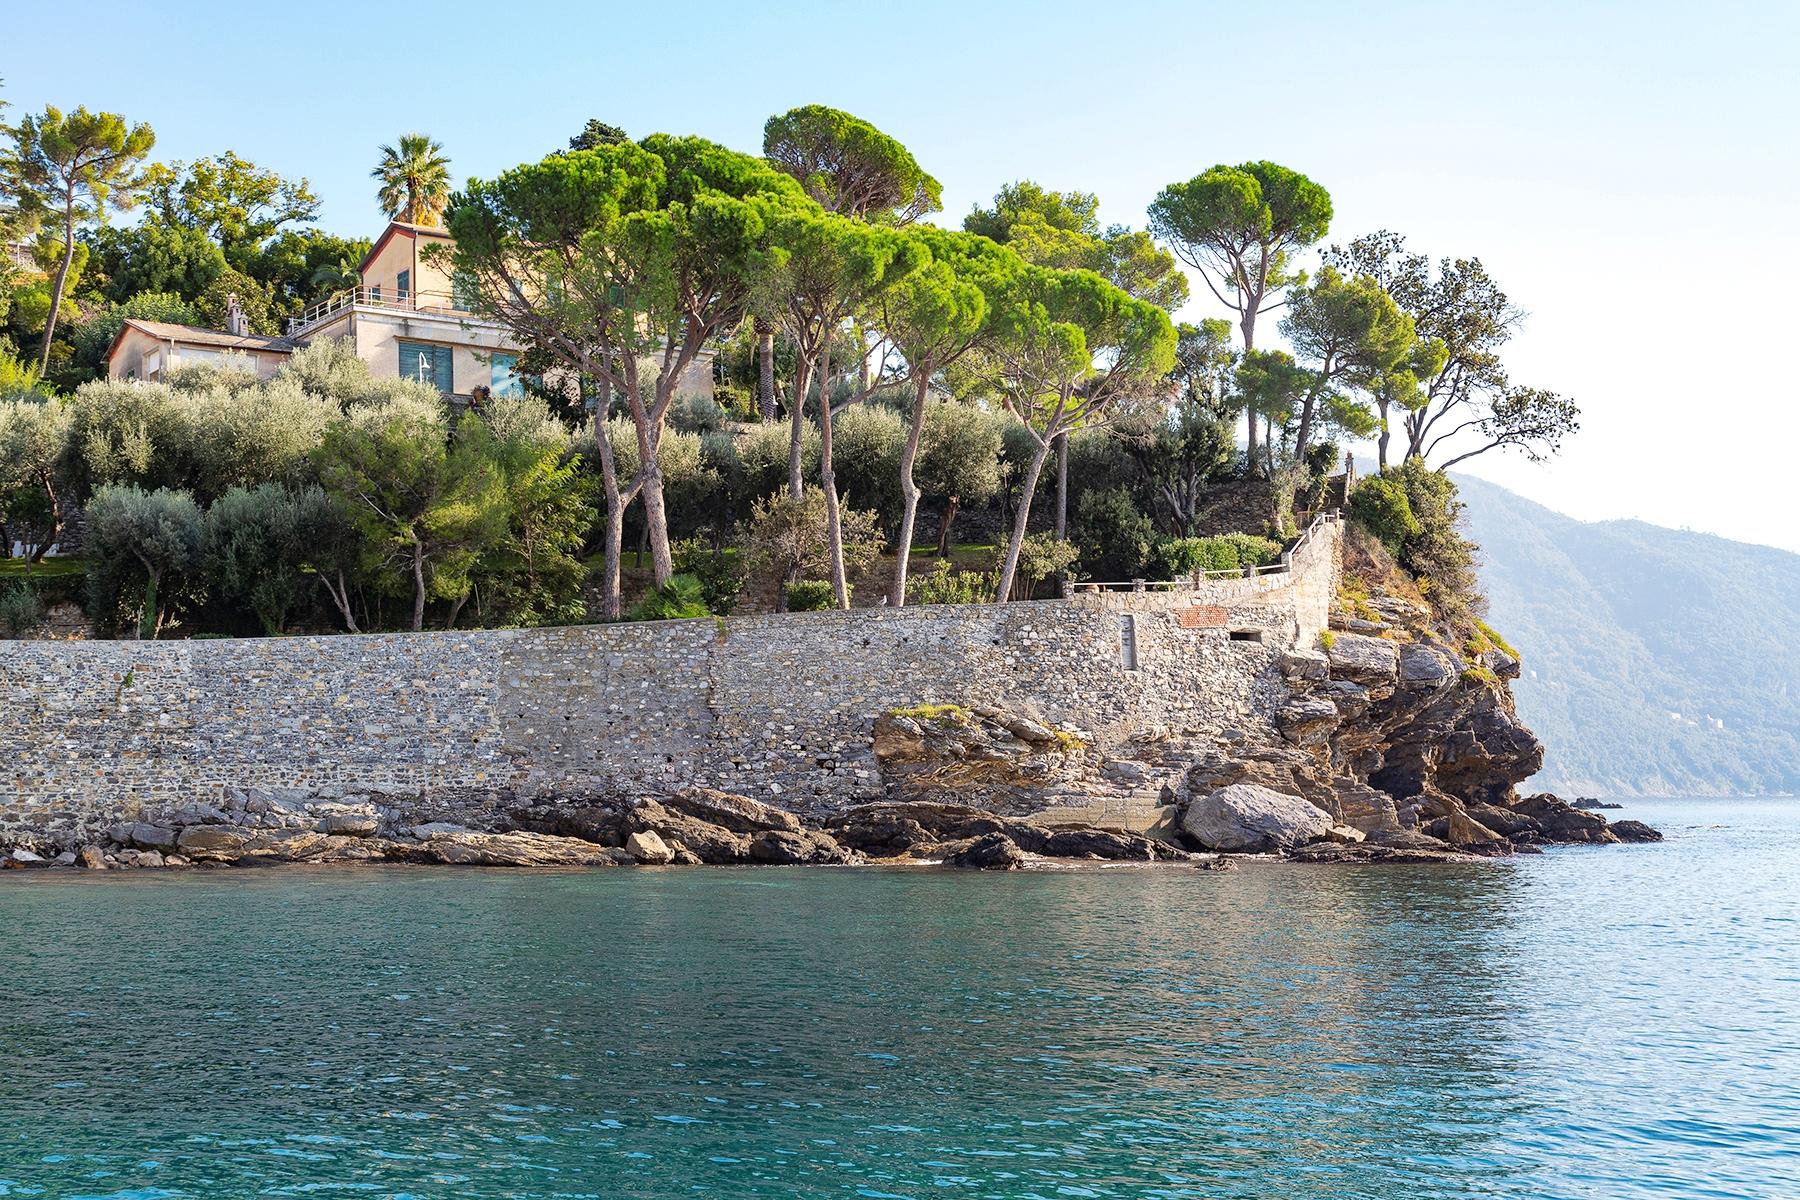 Villa pied dans l'eau between Recco and Monte di Portofino - 1